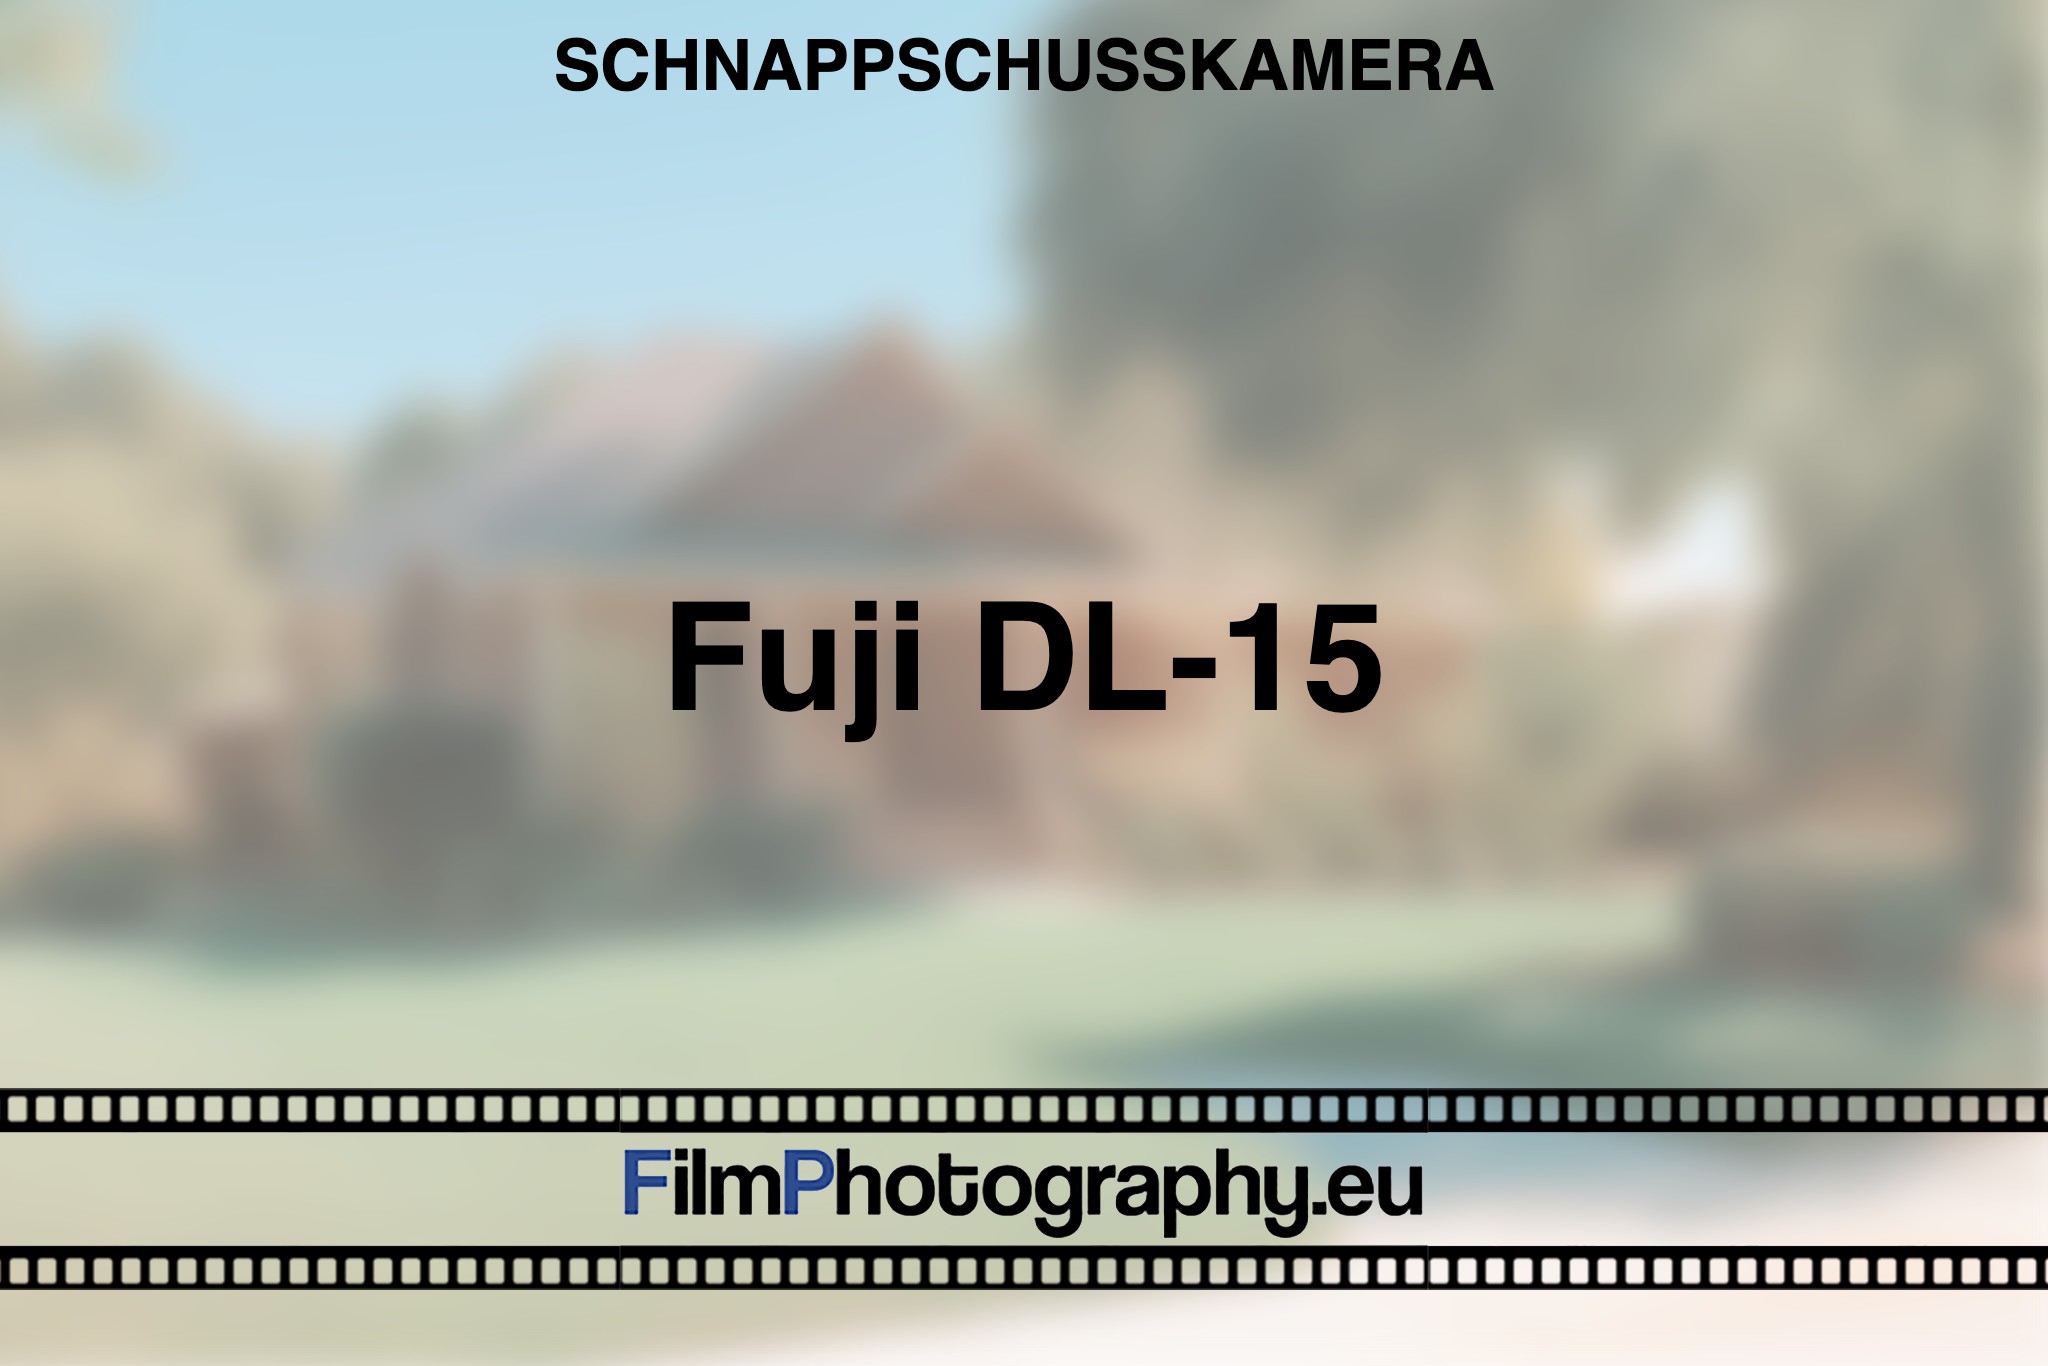 fuji-dl-15-schnappschusskamera-bnv